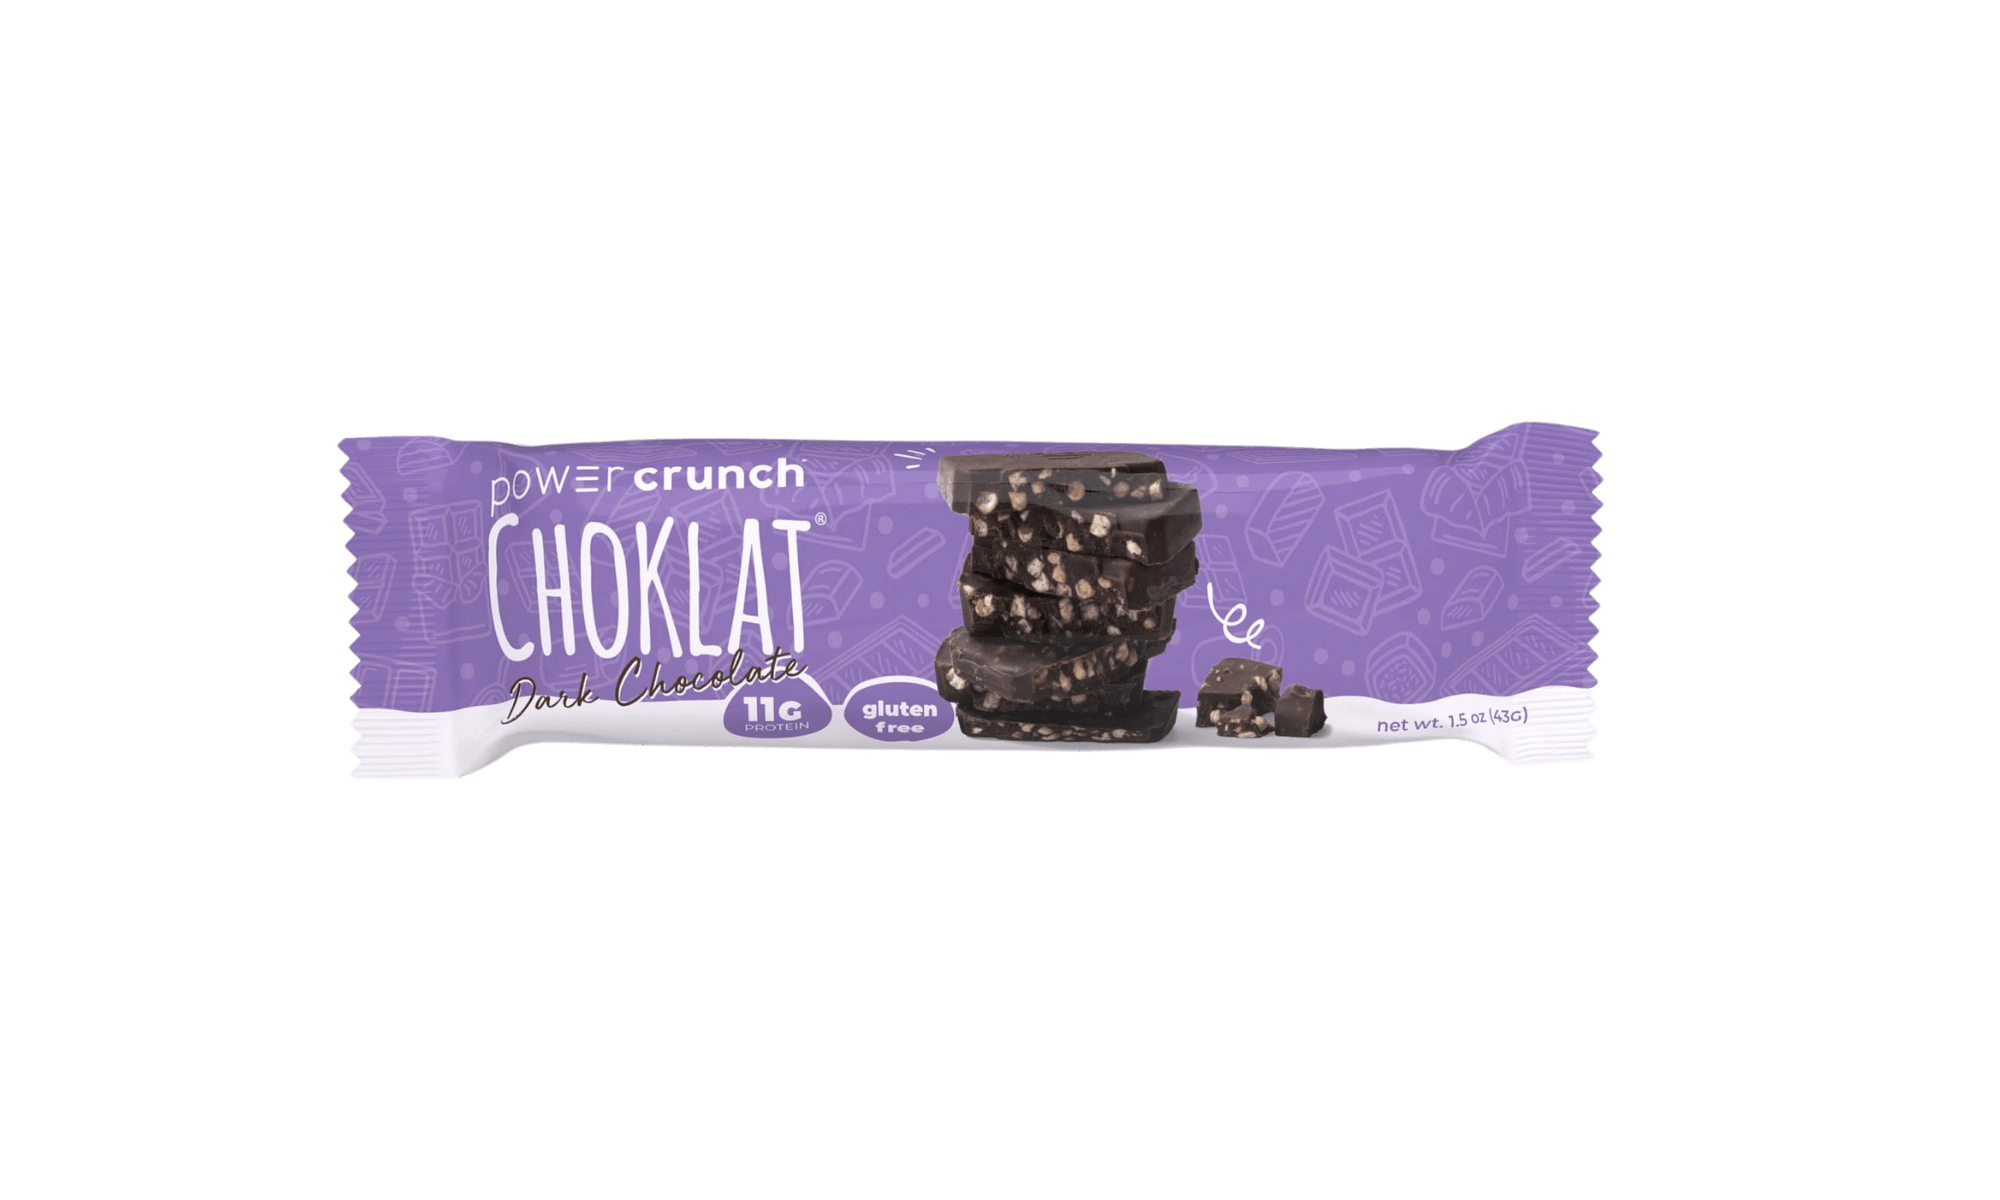 Power Crunch Choklat Dark Chocolate bars